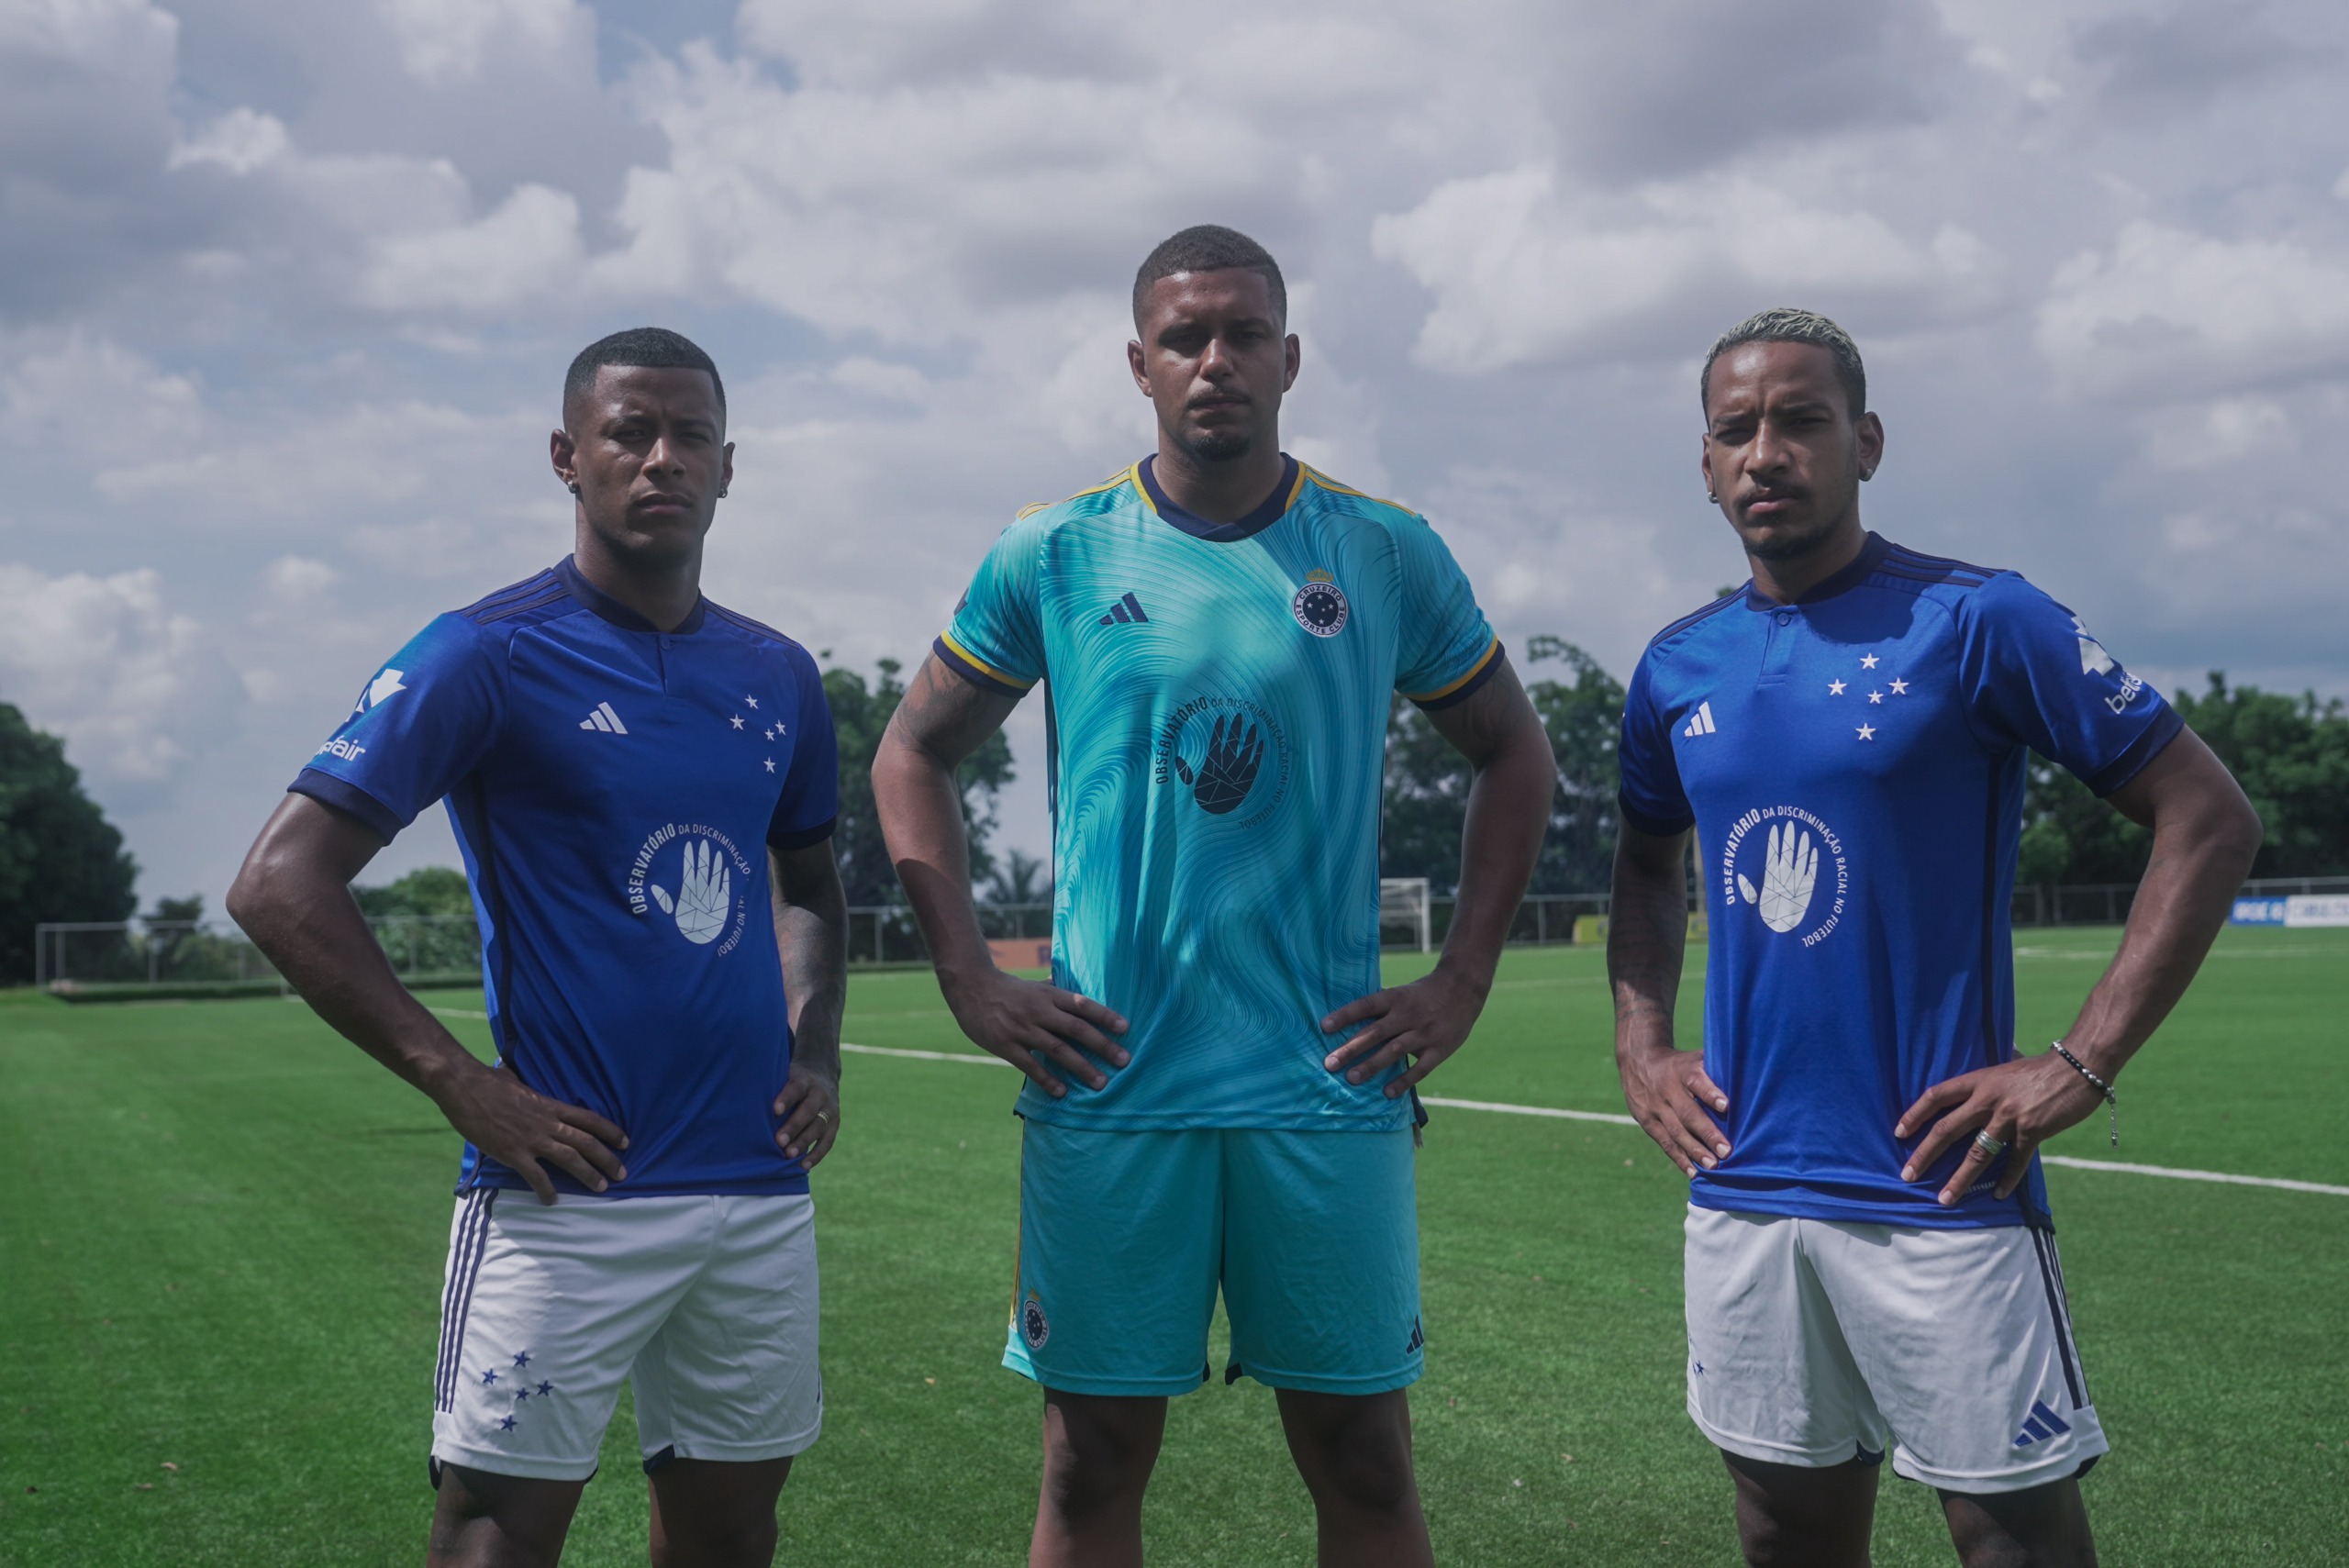 Betfair cede espaço nas camisas da base do Cruzeiro para Observatório da Discriminação Racial no Futebol; time principal estampará a campanha neste sábado